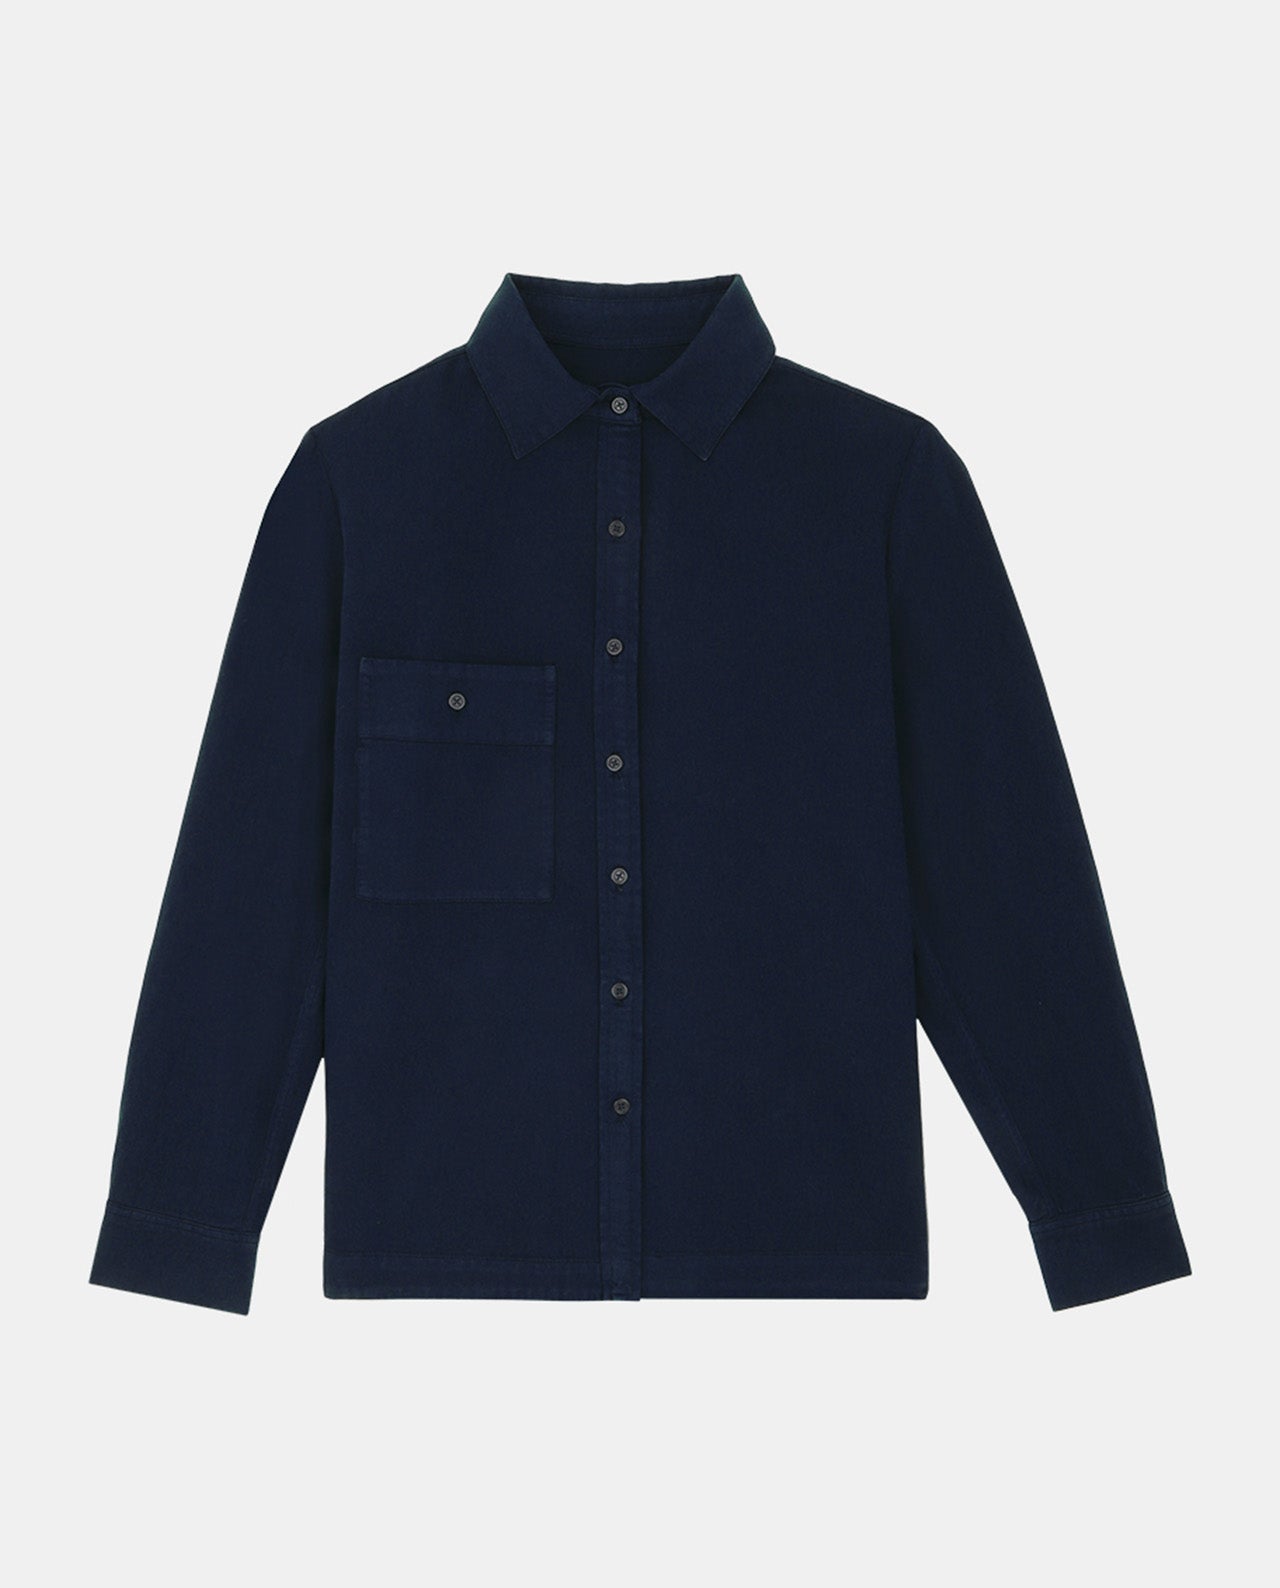 marché commun noyoco chemise homme coton biologique éco-responsable fabriquée en Europe bleu marine